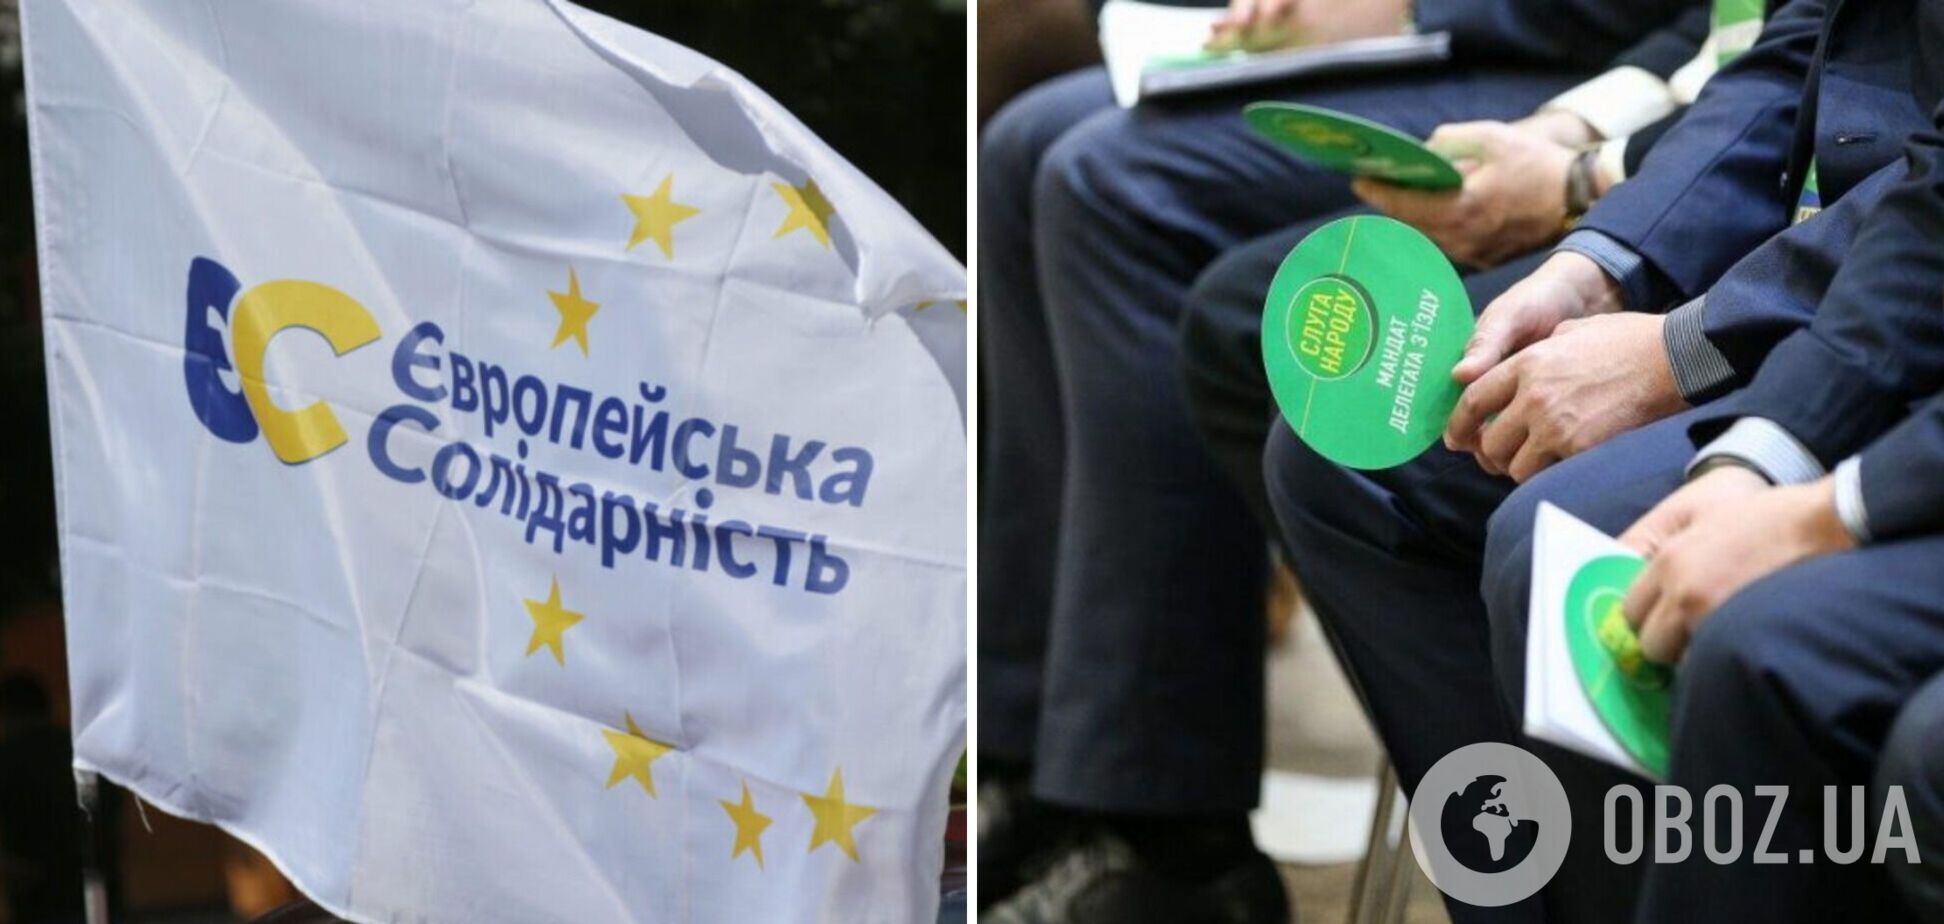 Рейтинг 'Слуги народа' продолжает падать, главной оппозиционной силой украинцы считают 'ЕС' – соцопрос